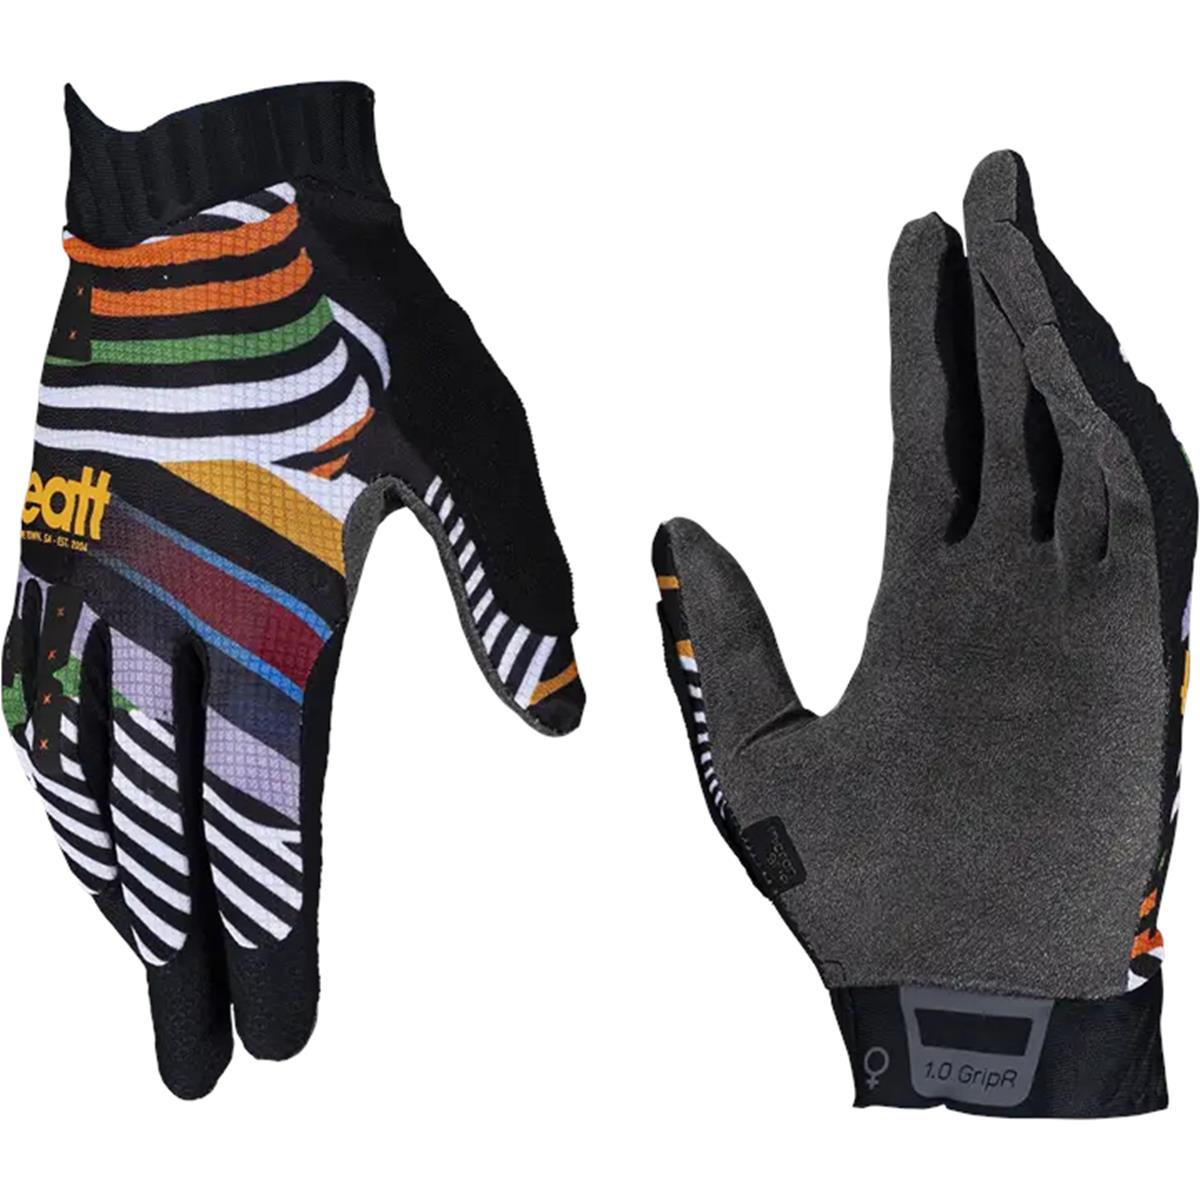 Leatt Girls MTB Gloves 1.0 GripR Stripes